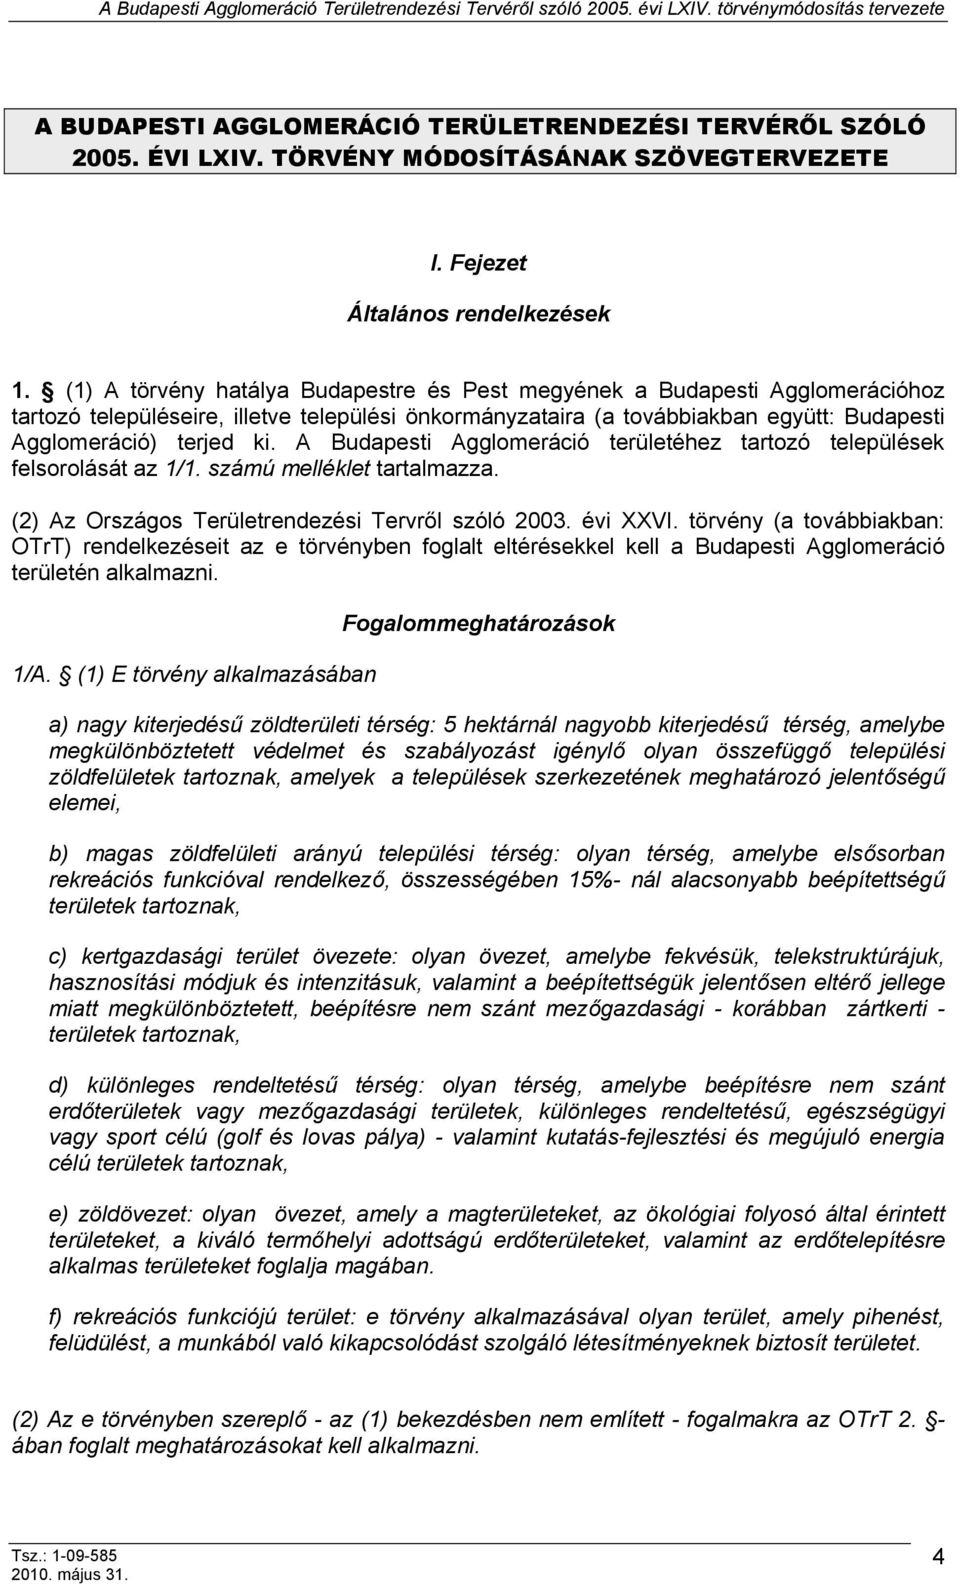 A Budapesti Agglomeráció területéhez tartozó települések felsorolását az 1/1. számú melléklet tartalmazza. (2) Az Országos Területrendezési Tervről szóló 2003. évi XXVI.